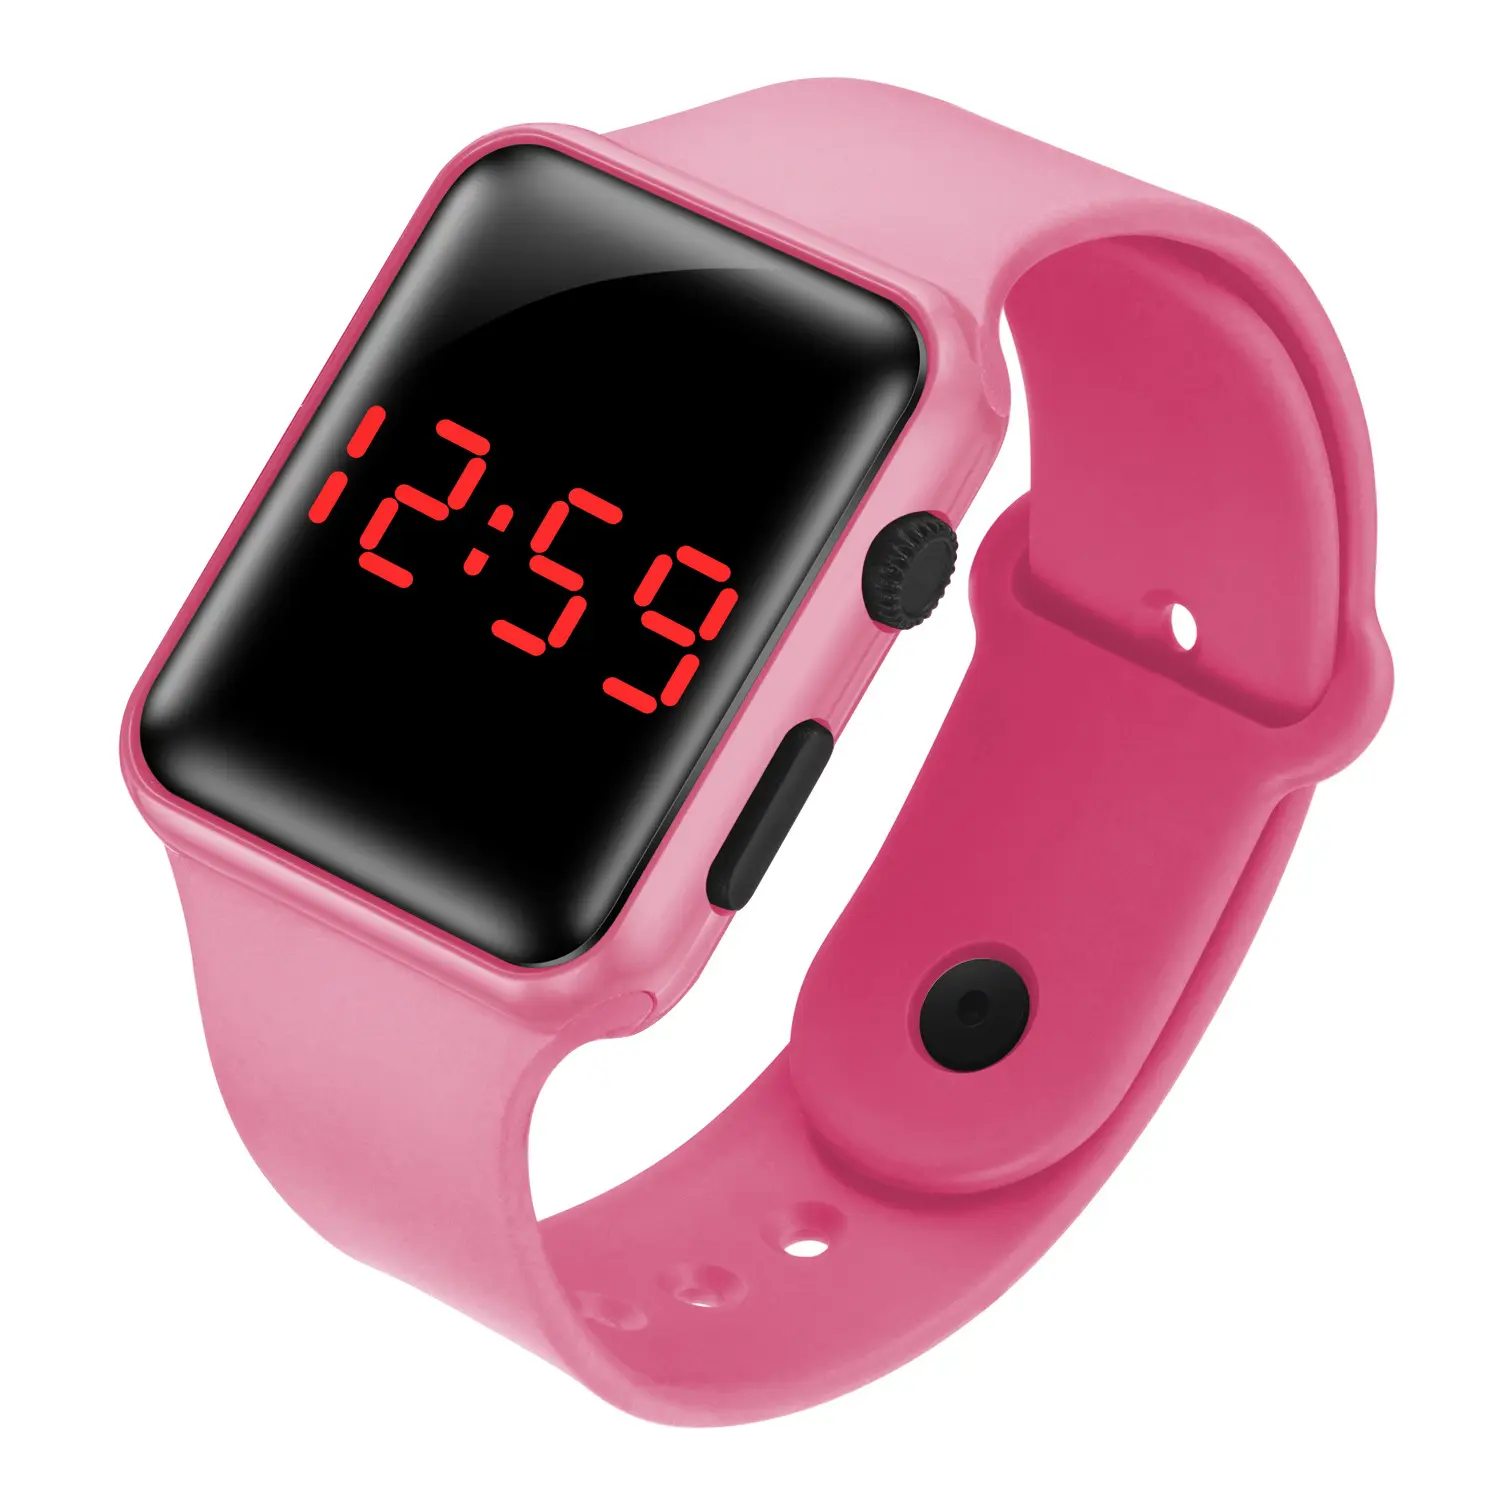 Hot Selling Beliebte Günstige Geschenk Mädchen Armband Uhren Sport Design Pink Square Silikon LED Display Uhren Saat